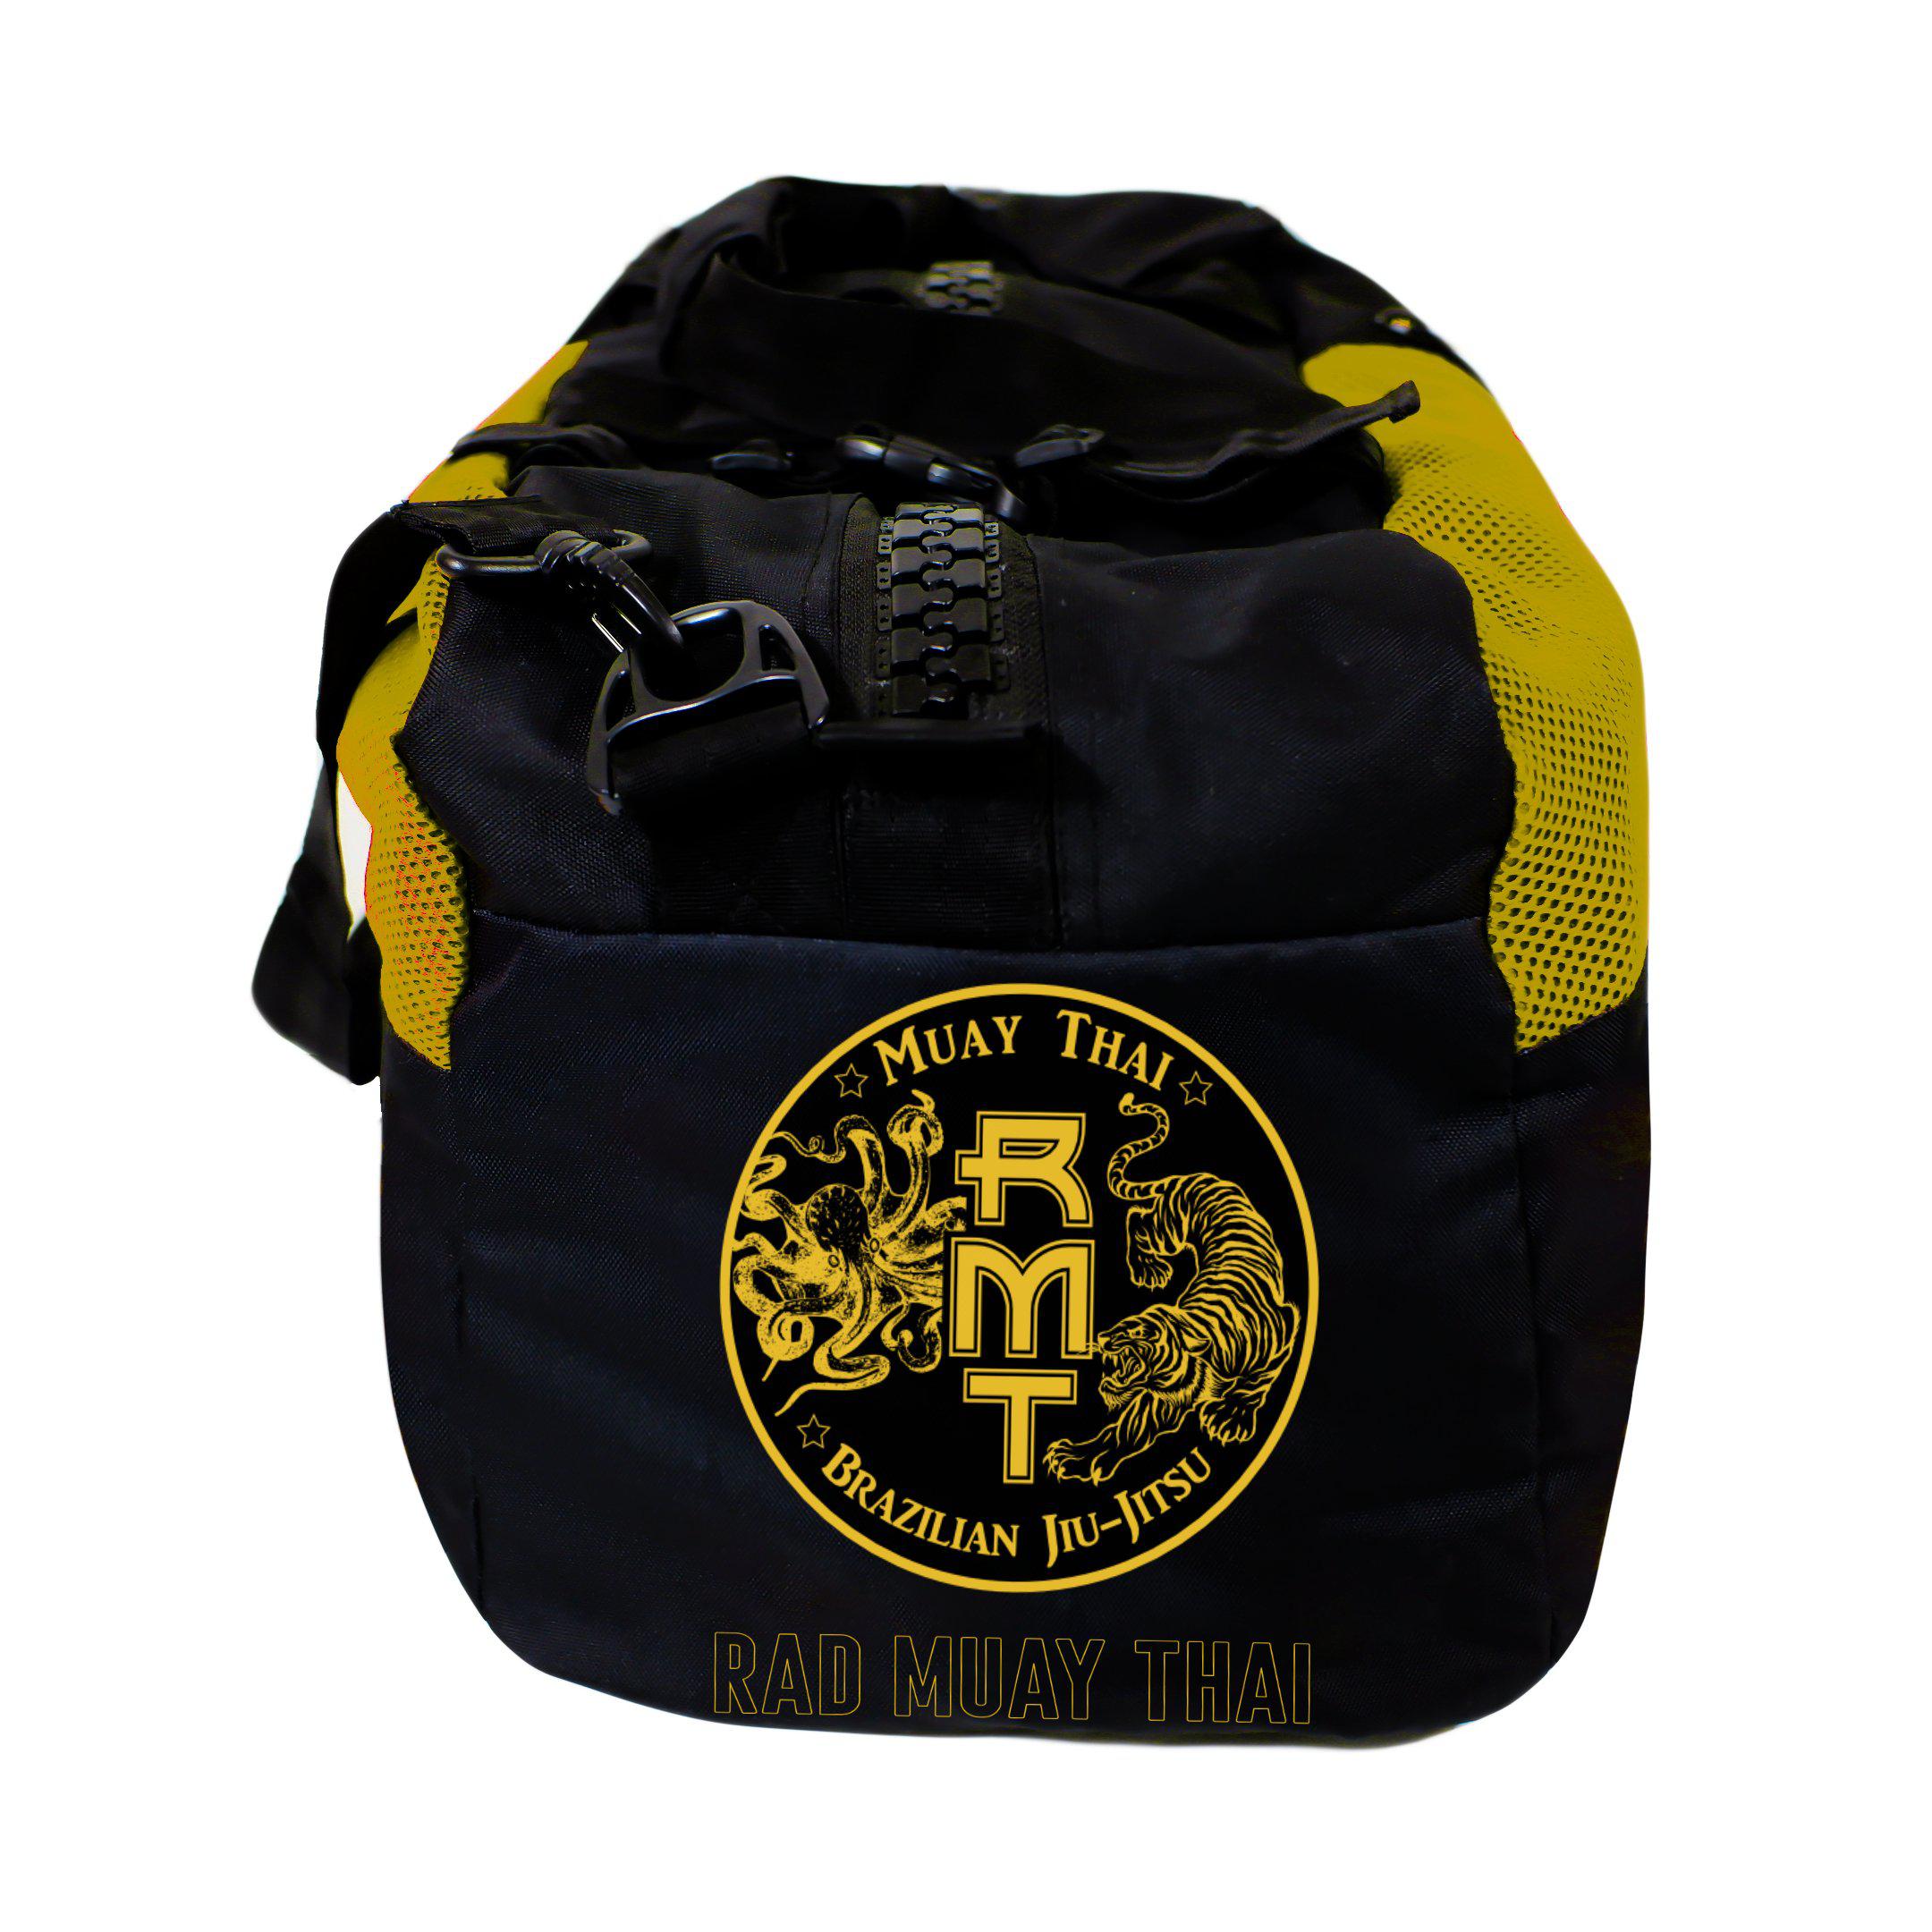 RMT Gear Bag - Rad Muay Thai - Zenko Fightwear